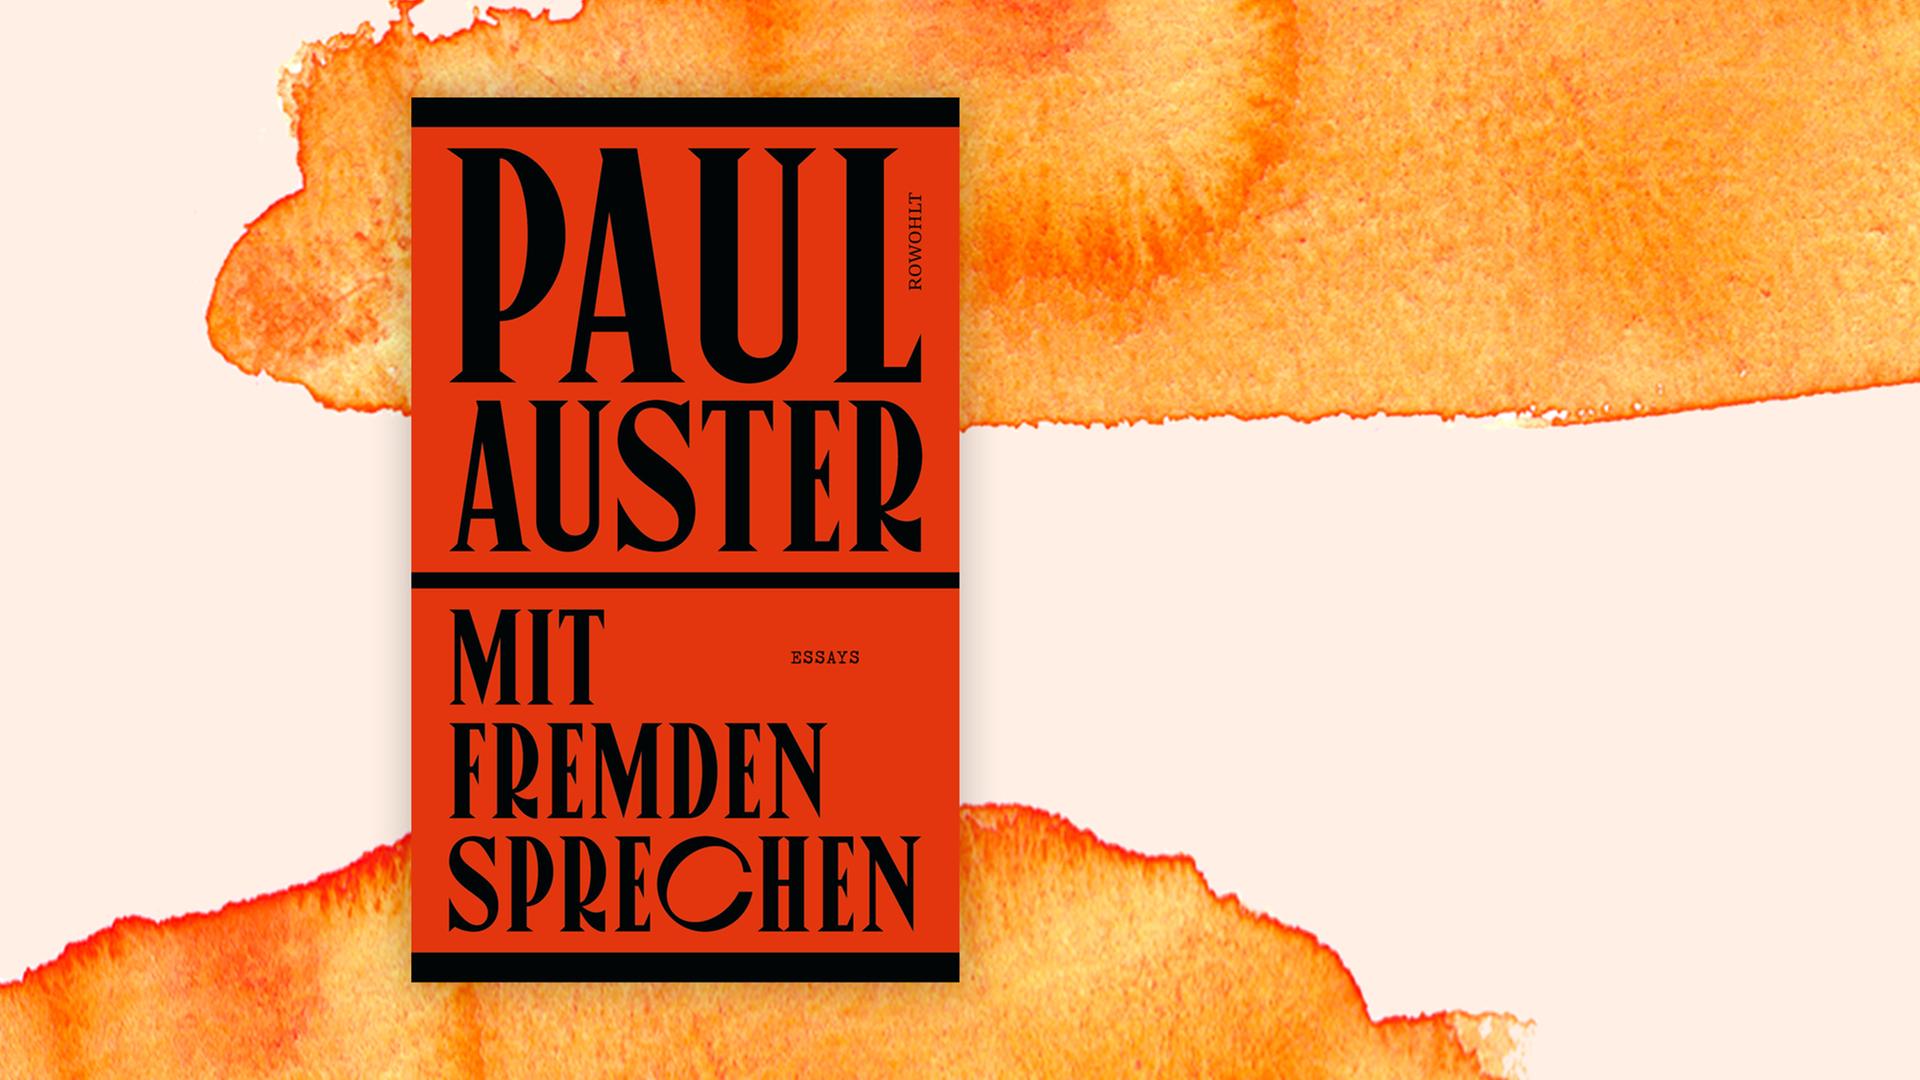 Paul Auster "Mit Fremden sprechen"